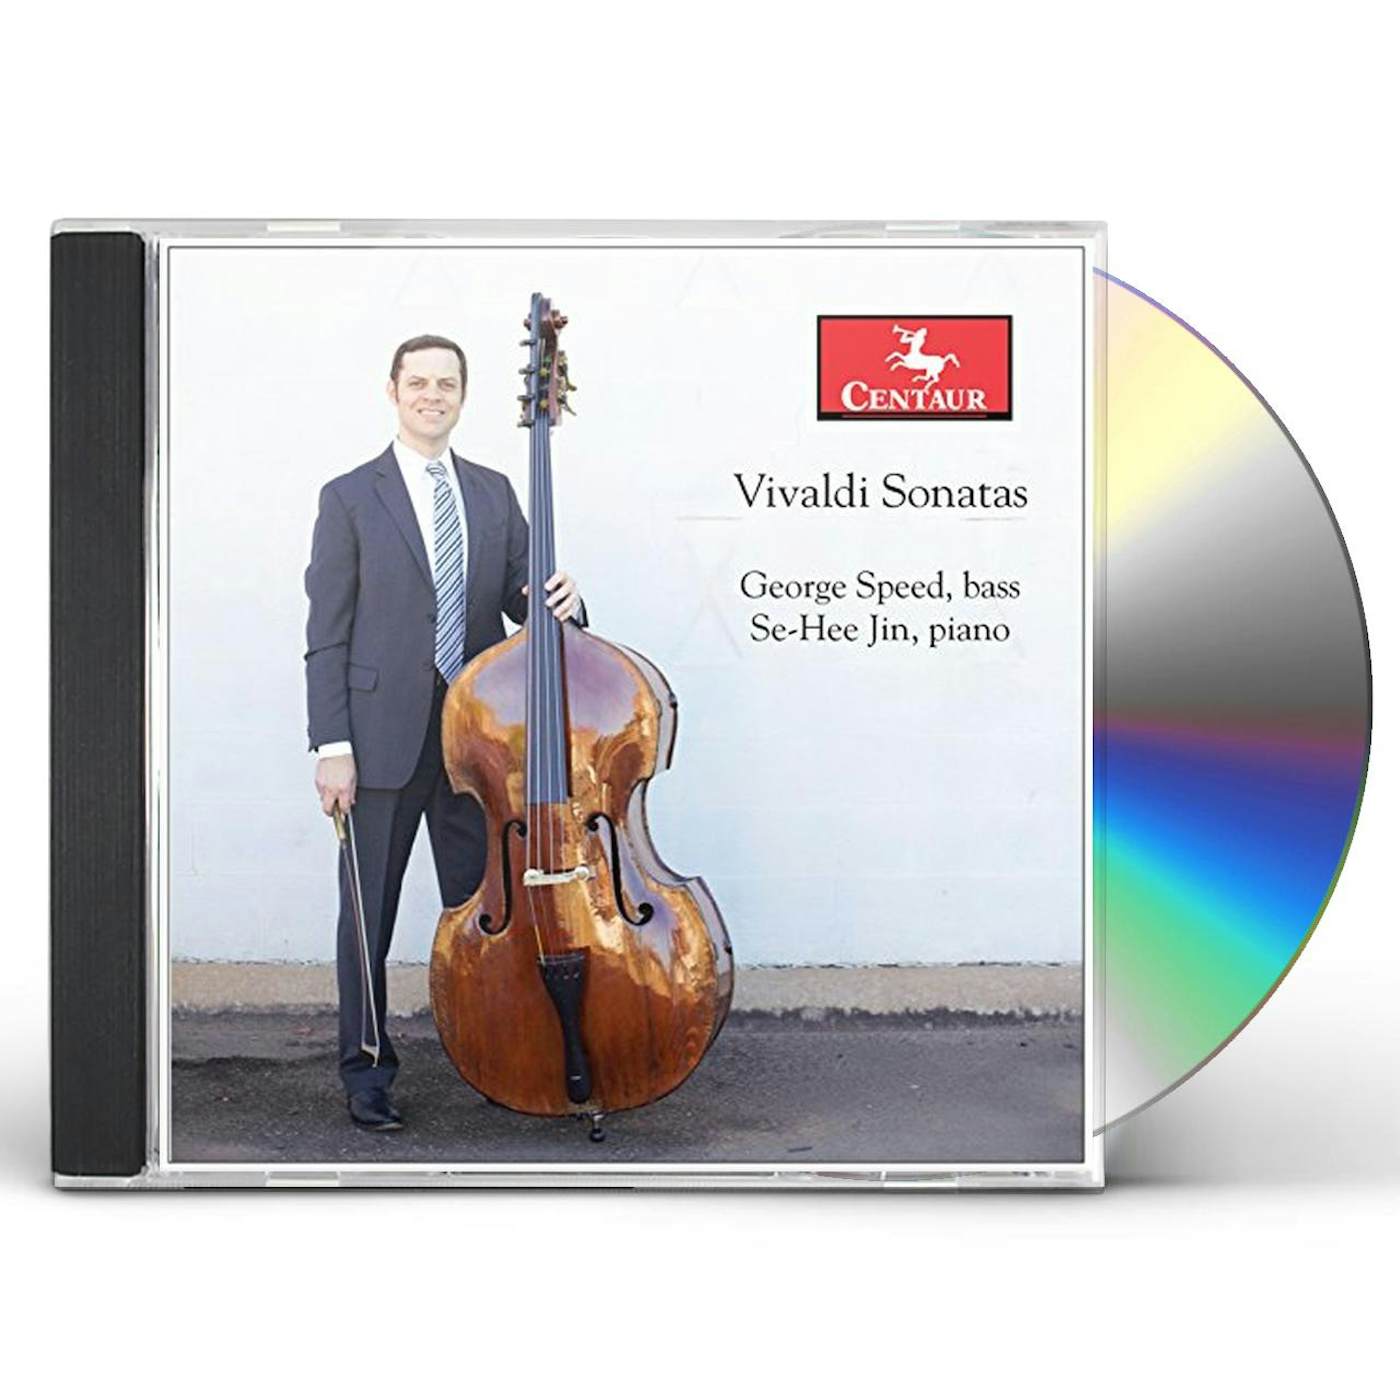 Antonio Vivaldi SONATAS CD